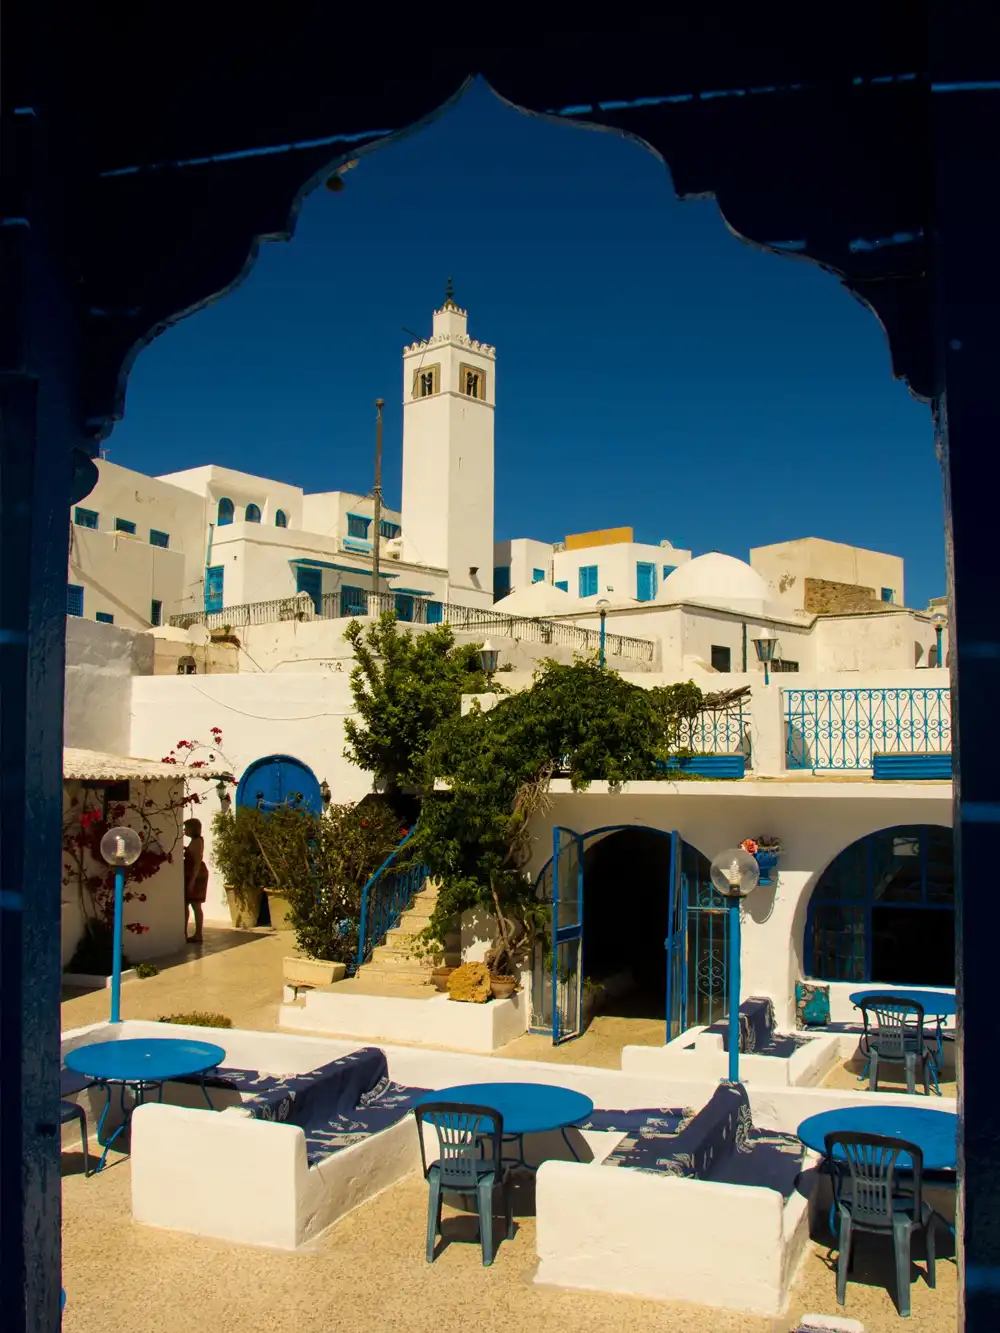 Tunis Old Medina